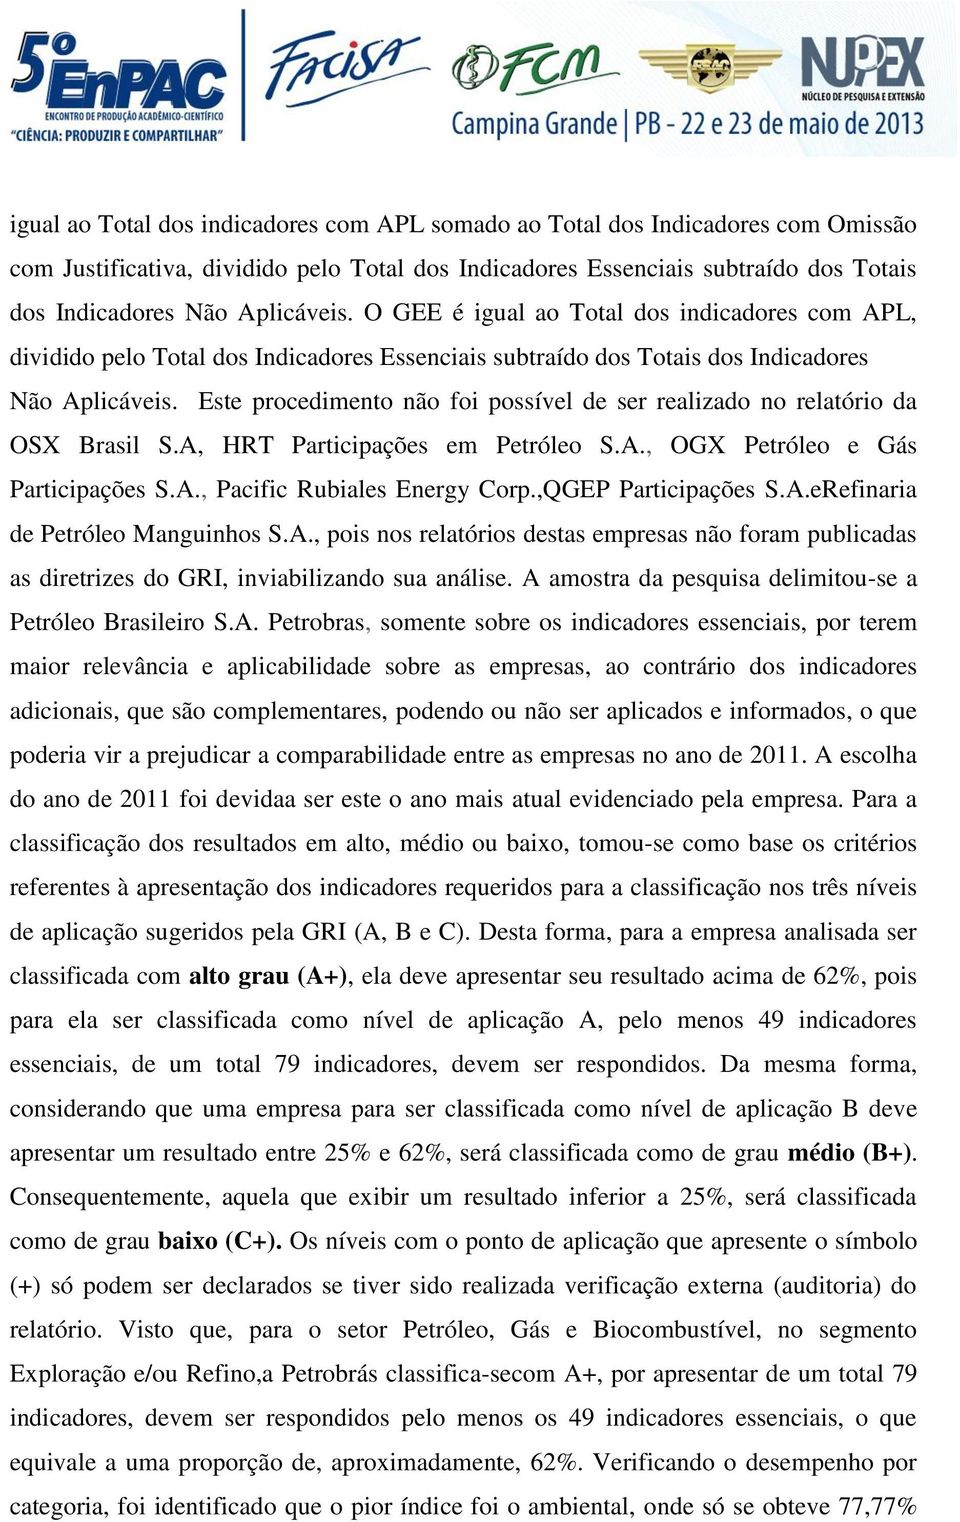 Este procedimento não foi possível de ser realizado no relatório da OSX Brasil S.A, HRT Participações em Petróleo S.A., OGX Petróleo e Gás Participações S.A., Pacific Rubiales Energy Corp.